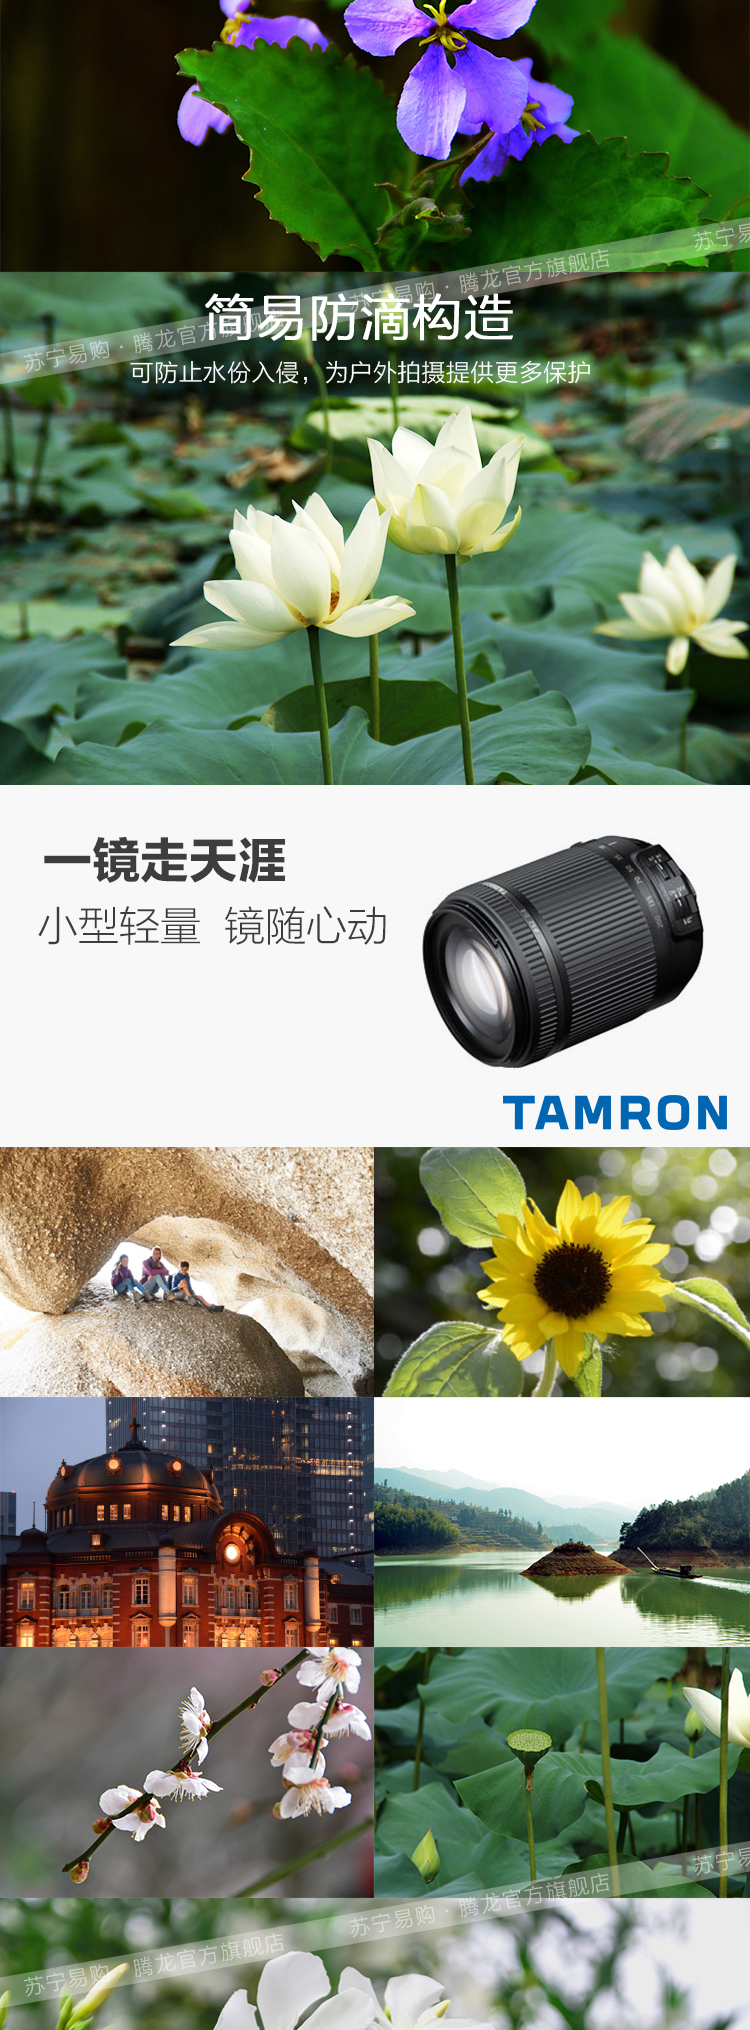 腾龙(TAMRON) 18-200mm F/3.5-6.3 Di II VC Model B018 索尼卡口